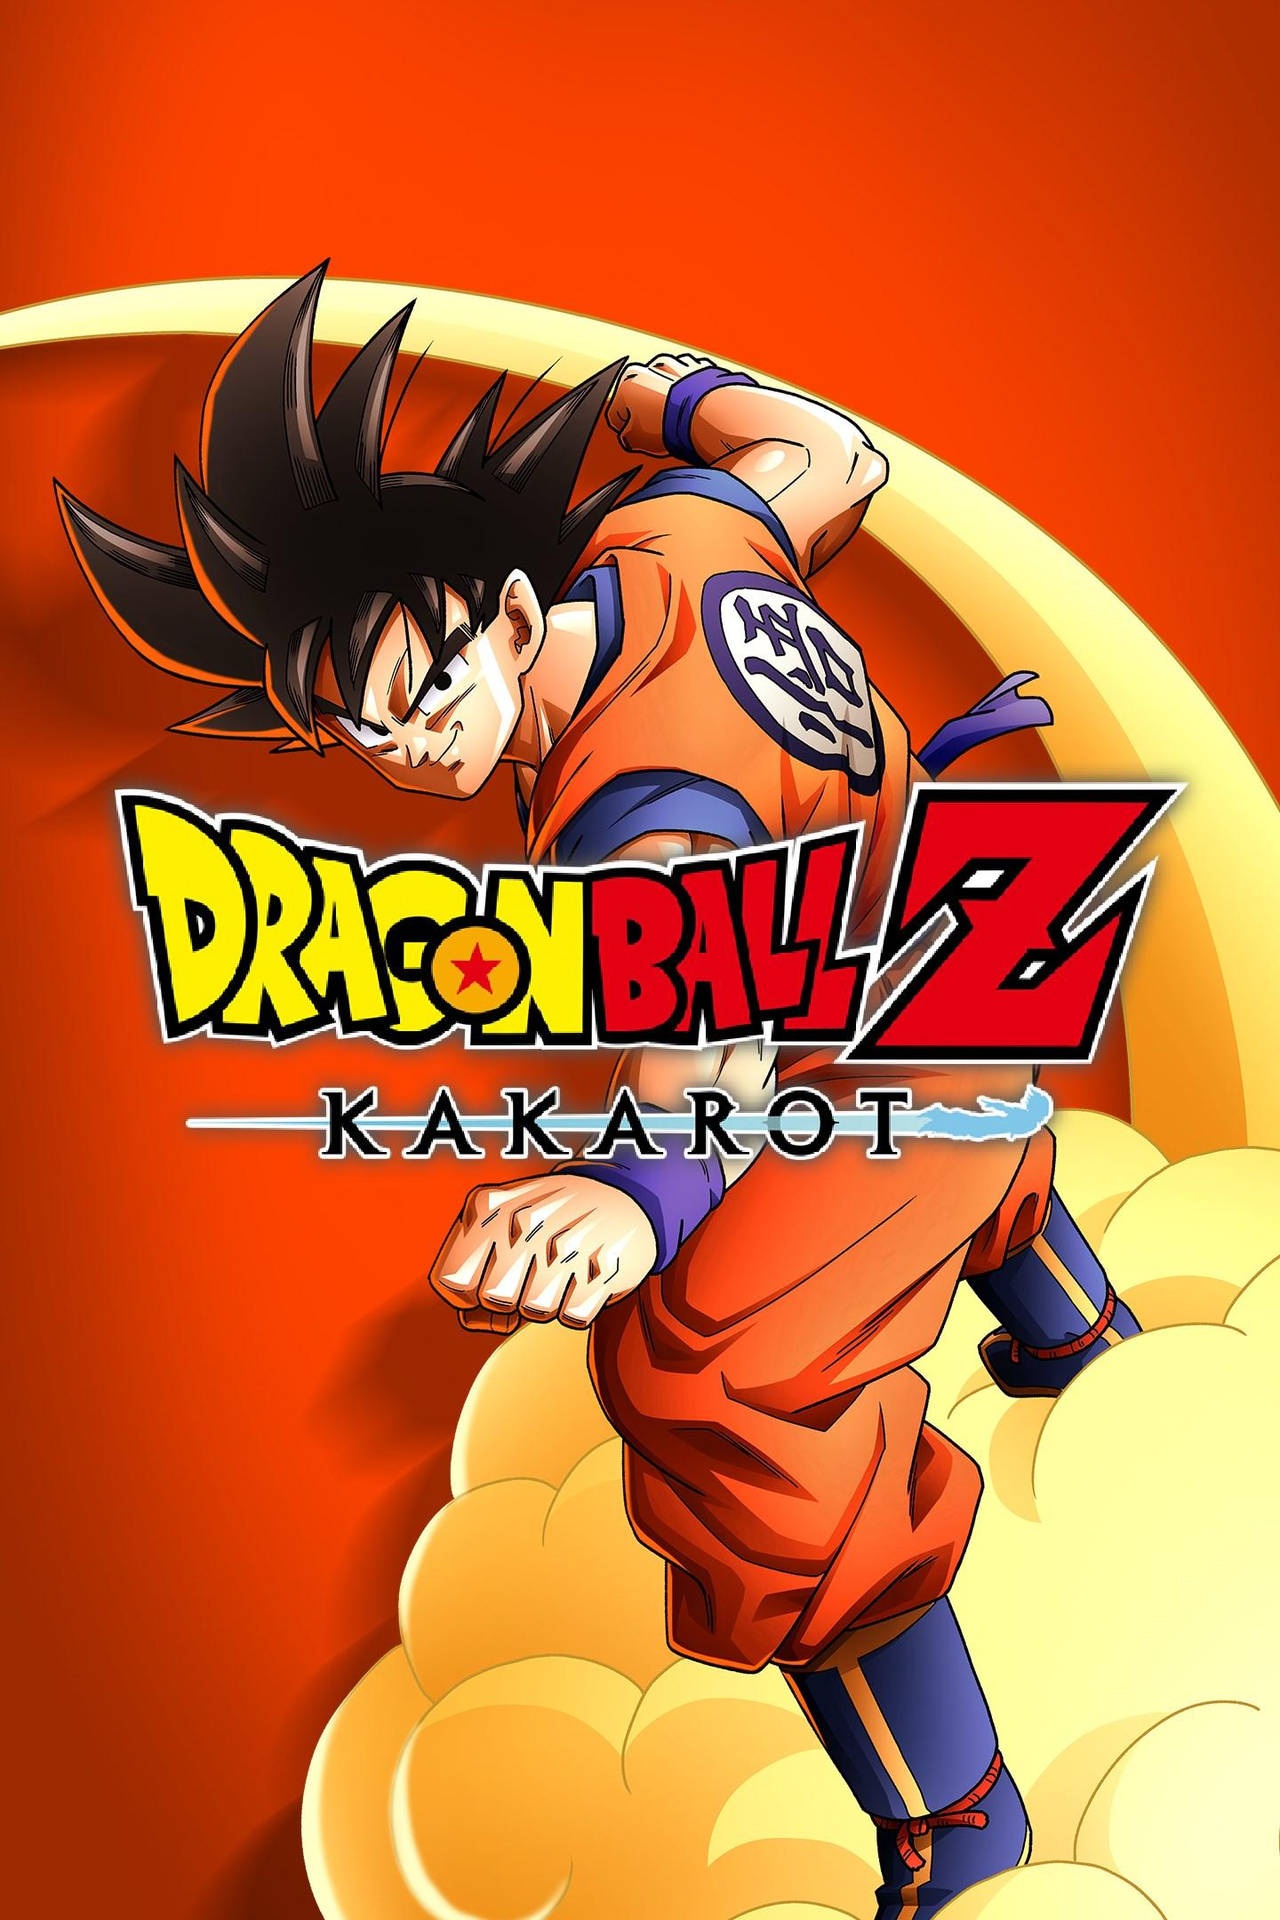 Dragon Ball Z Logo Wallpaper